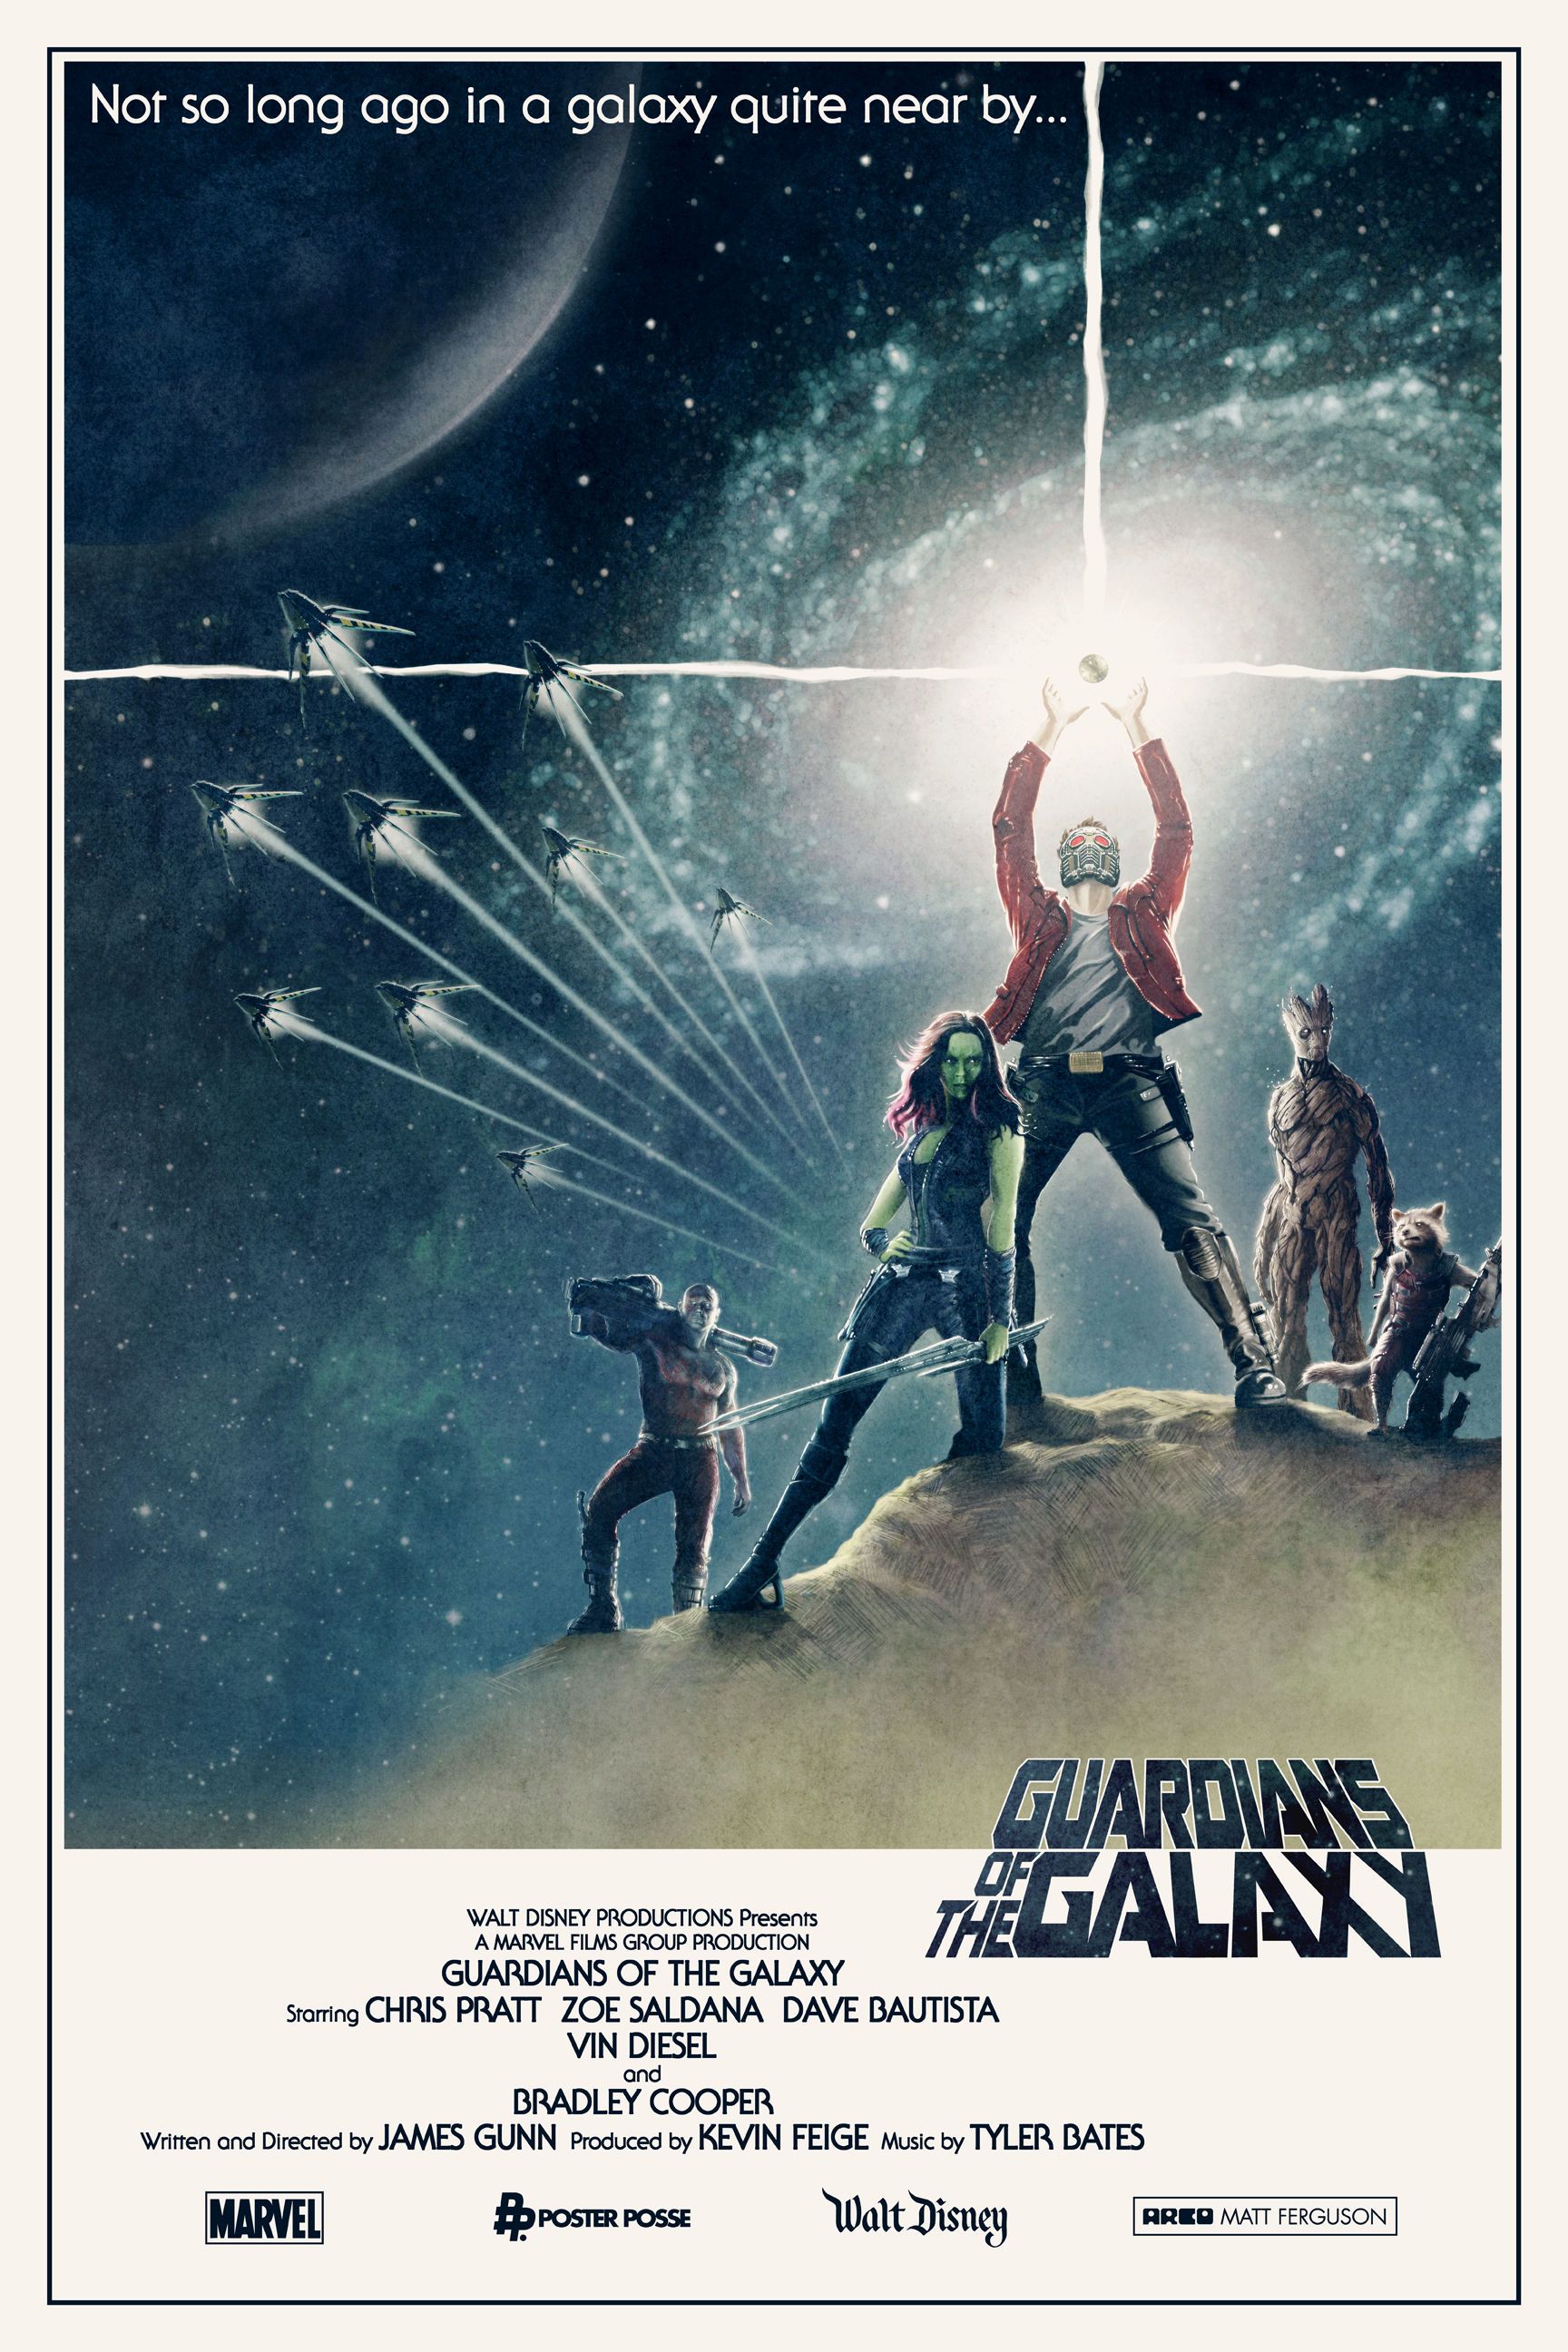 Guardians of the Galaxy Poster by Matt Ferguson